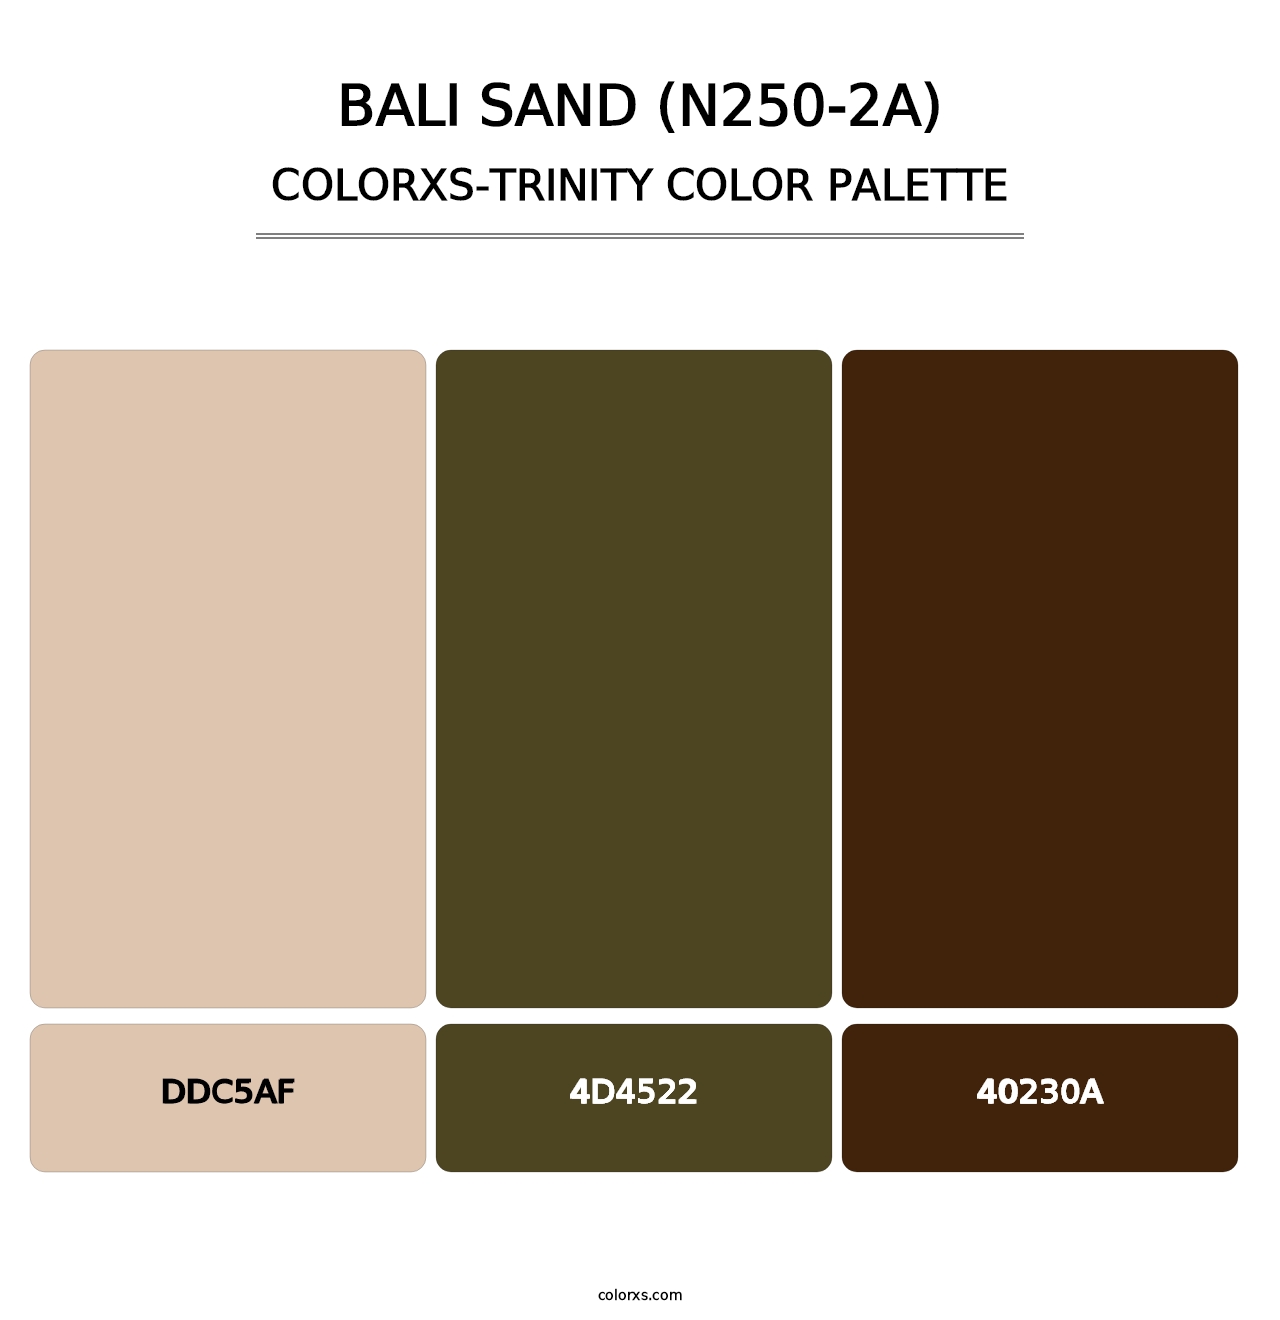 Bali Sand (N250-2A) - Colorxs Trinity Palette